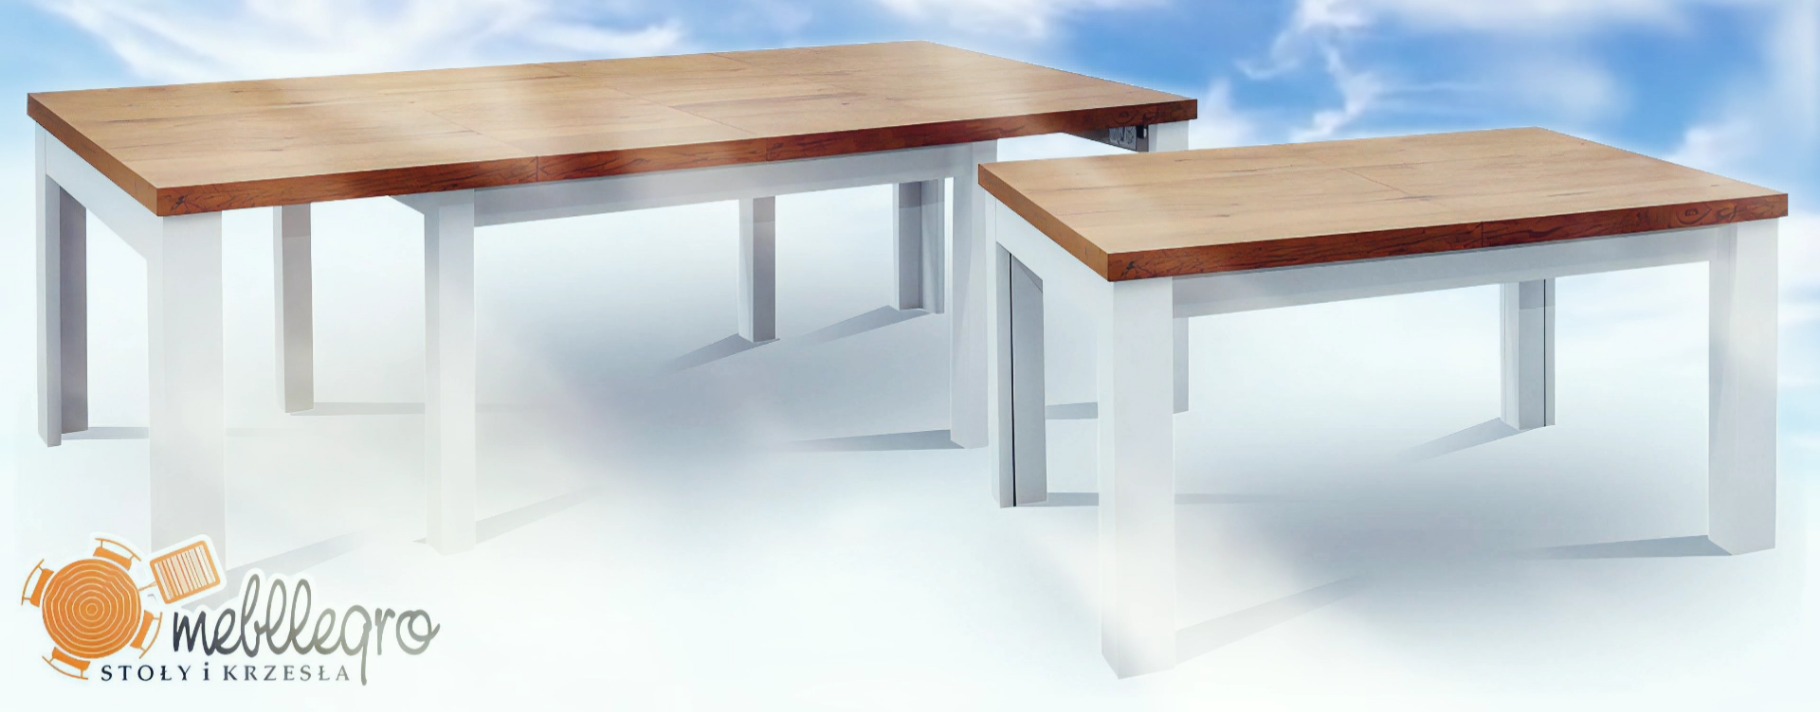 Drewniany stół rozkładany z ośmioma białymi nogami